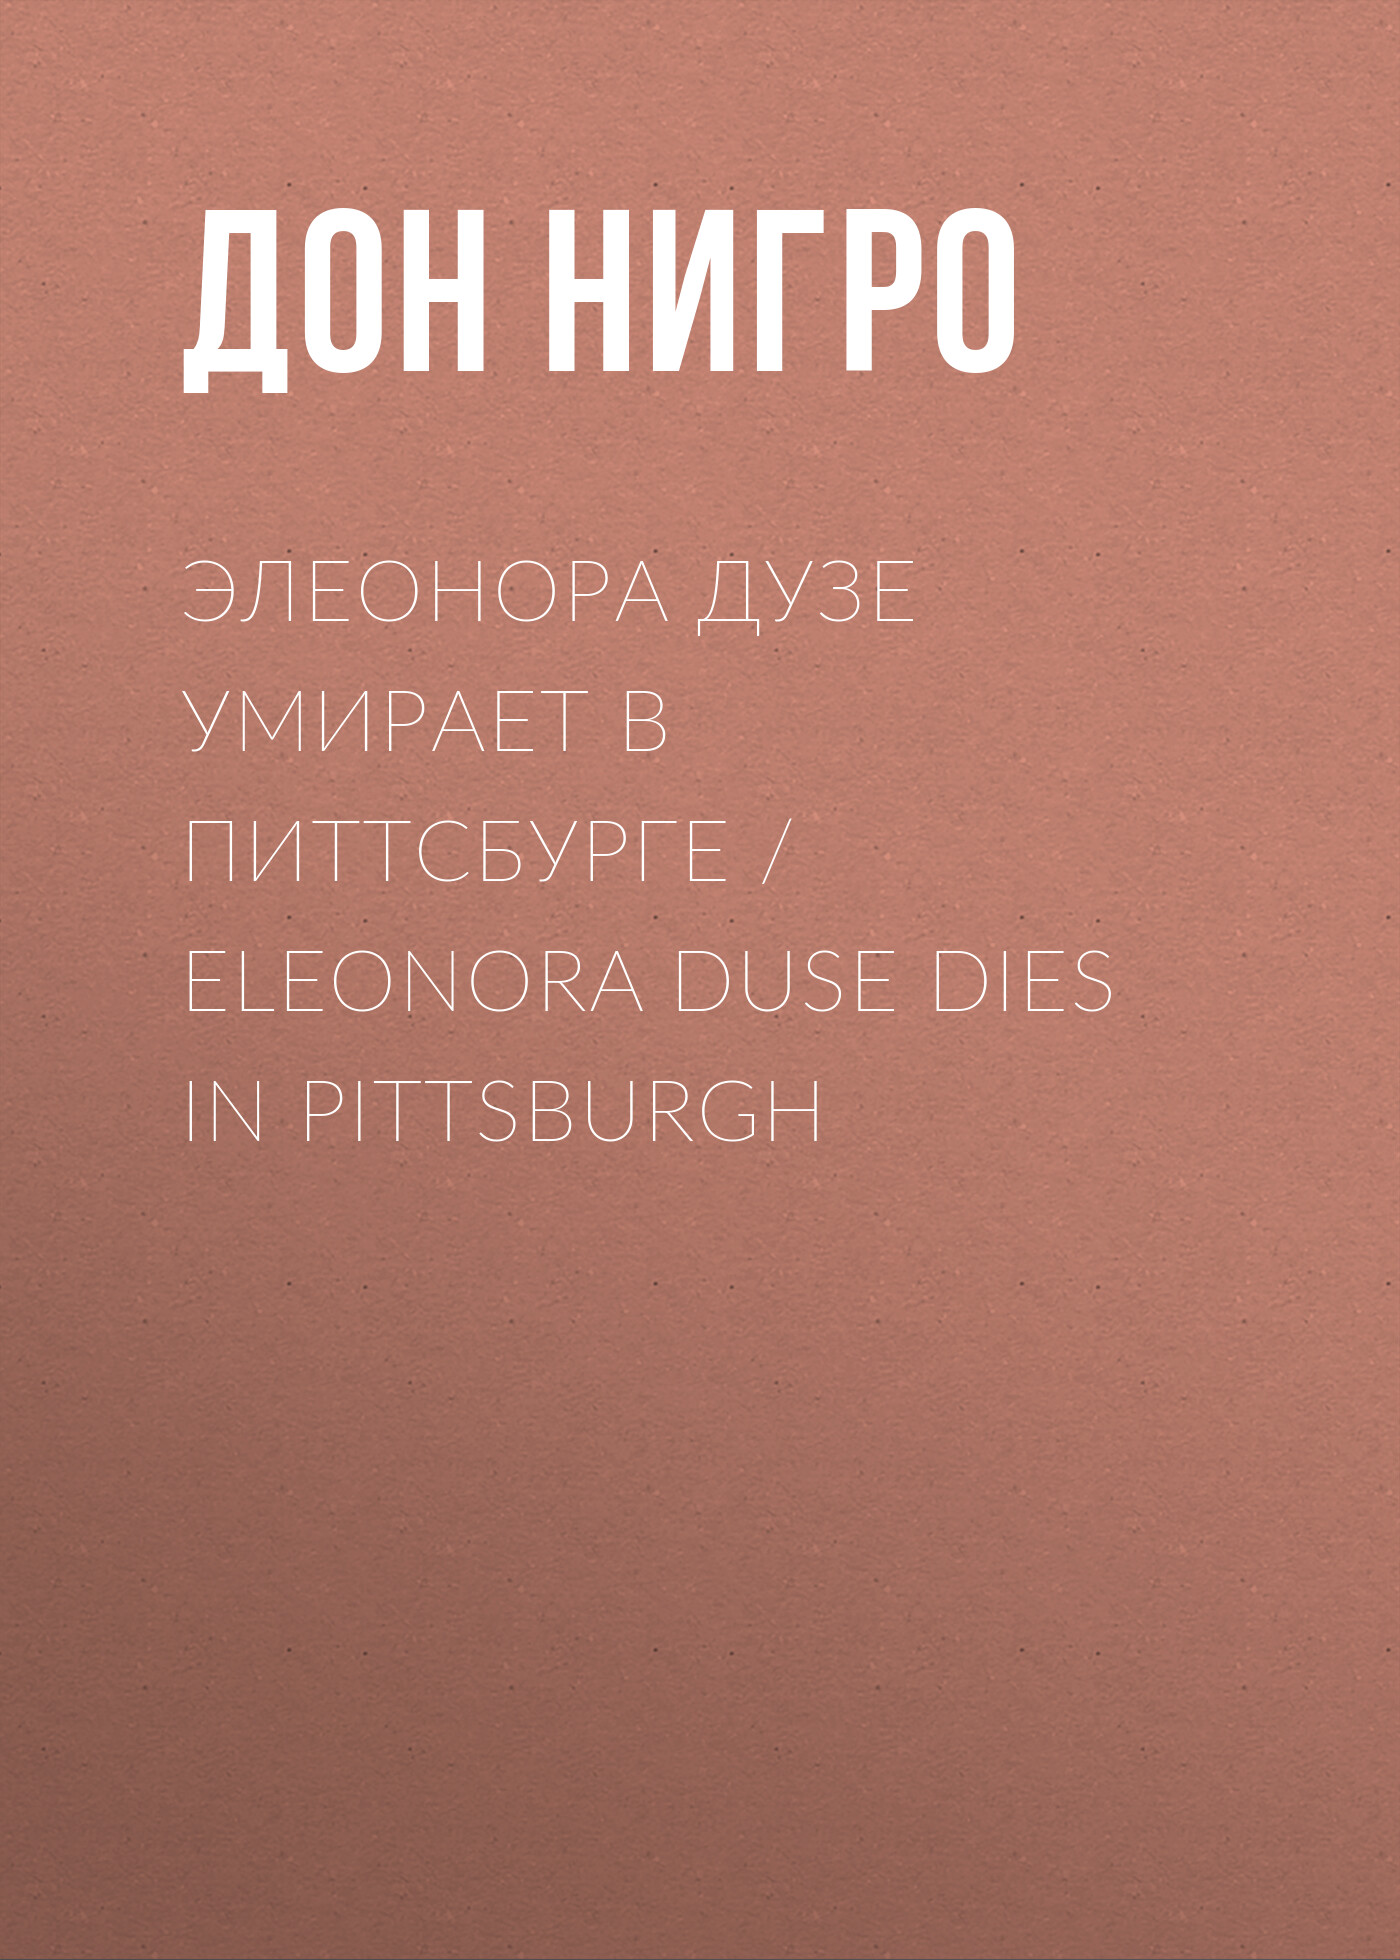 Элеонора Дузе умирает в Питтсбурге / Eleonora Duse Dies in Pittsburgh